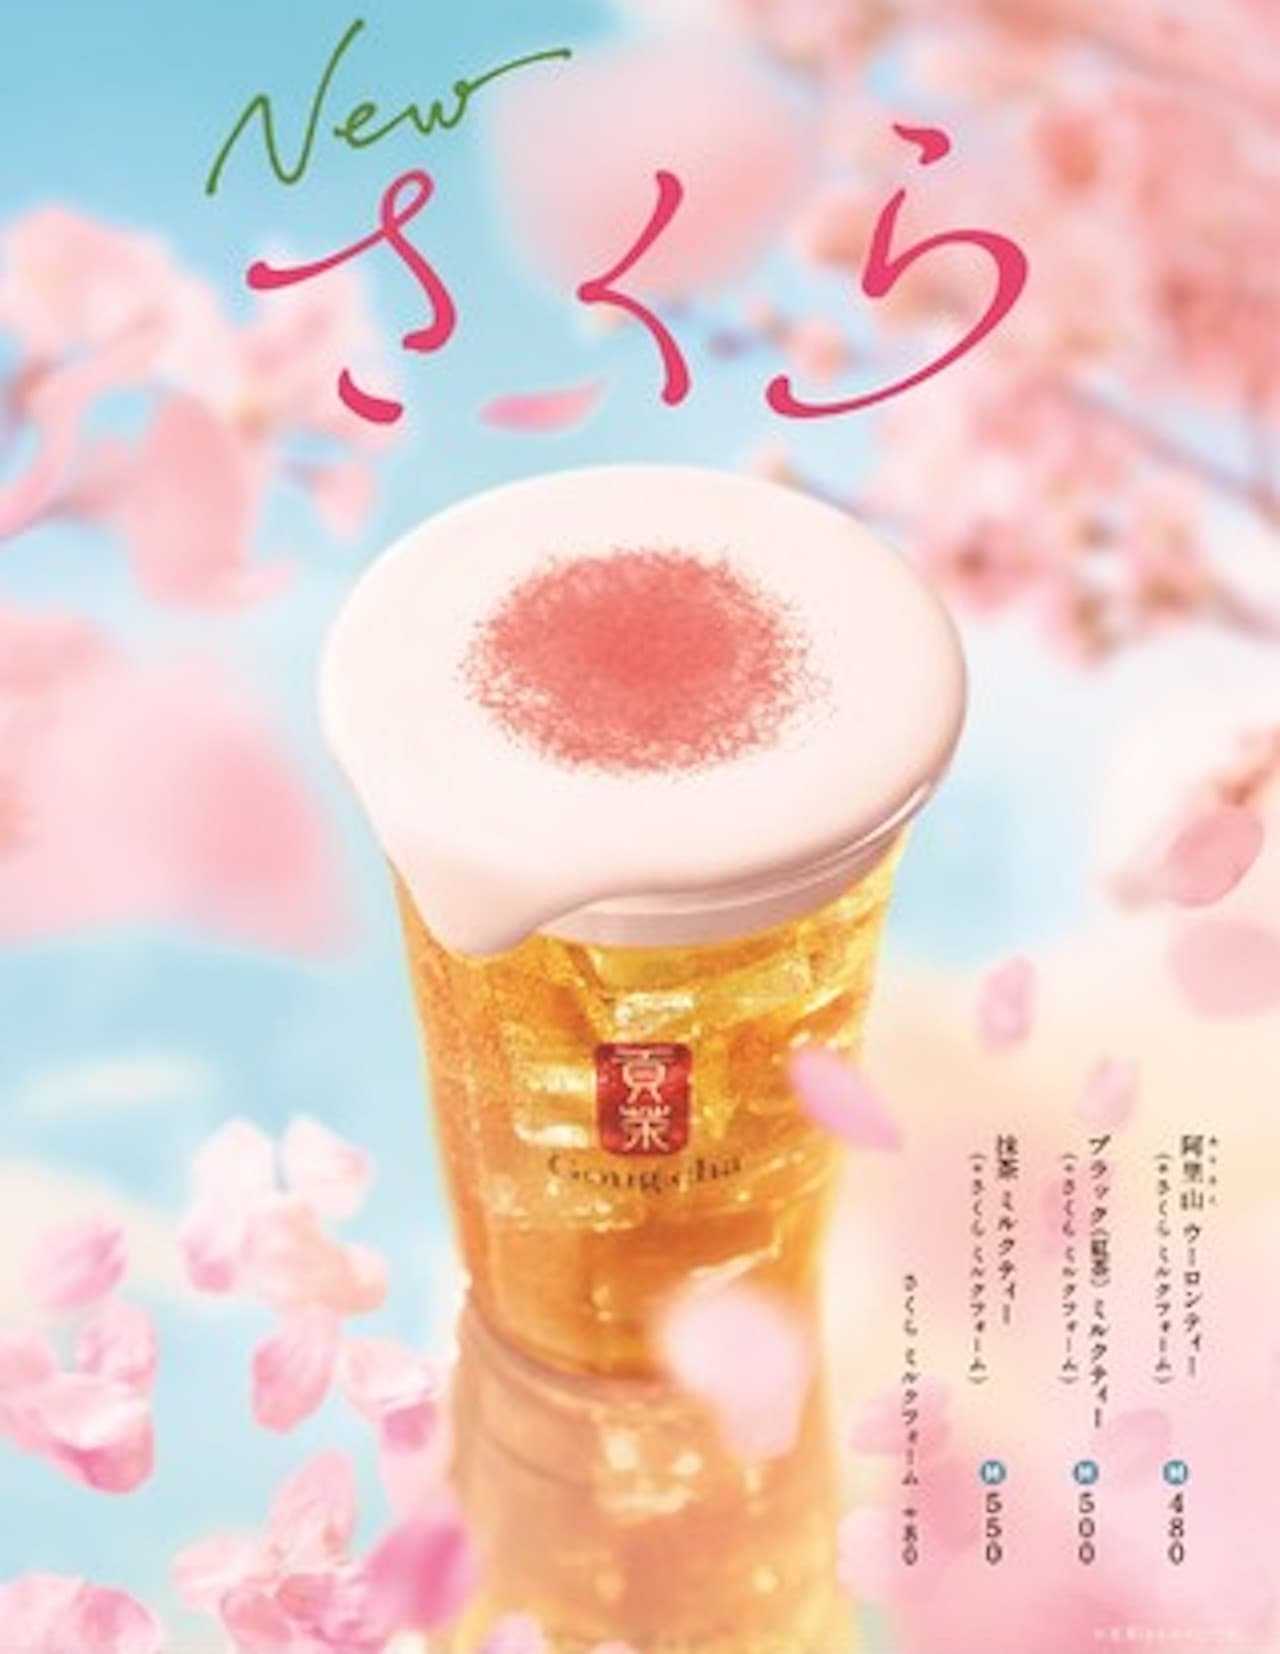 Gong Cha "Sakura Milk Foam"